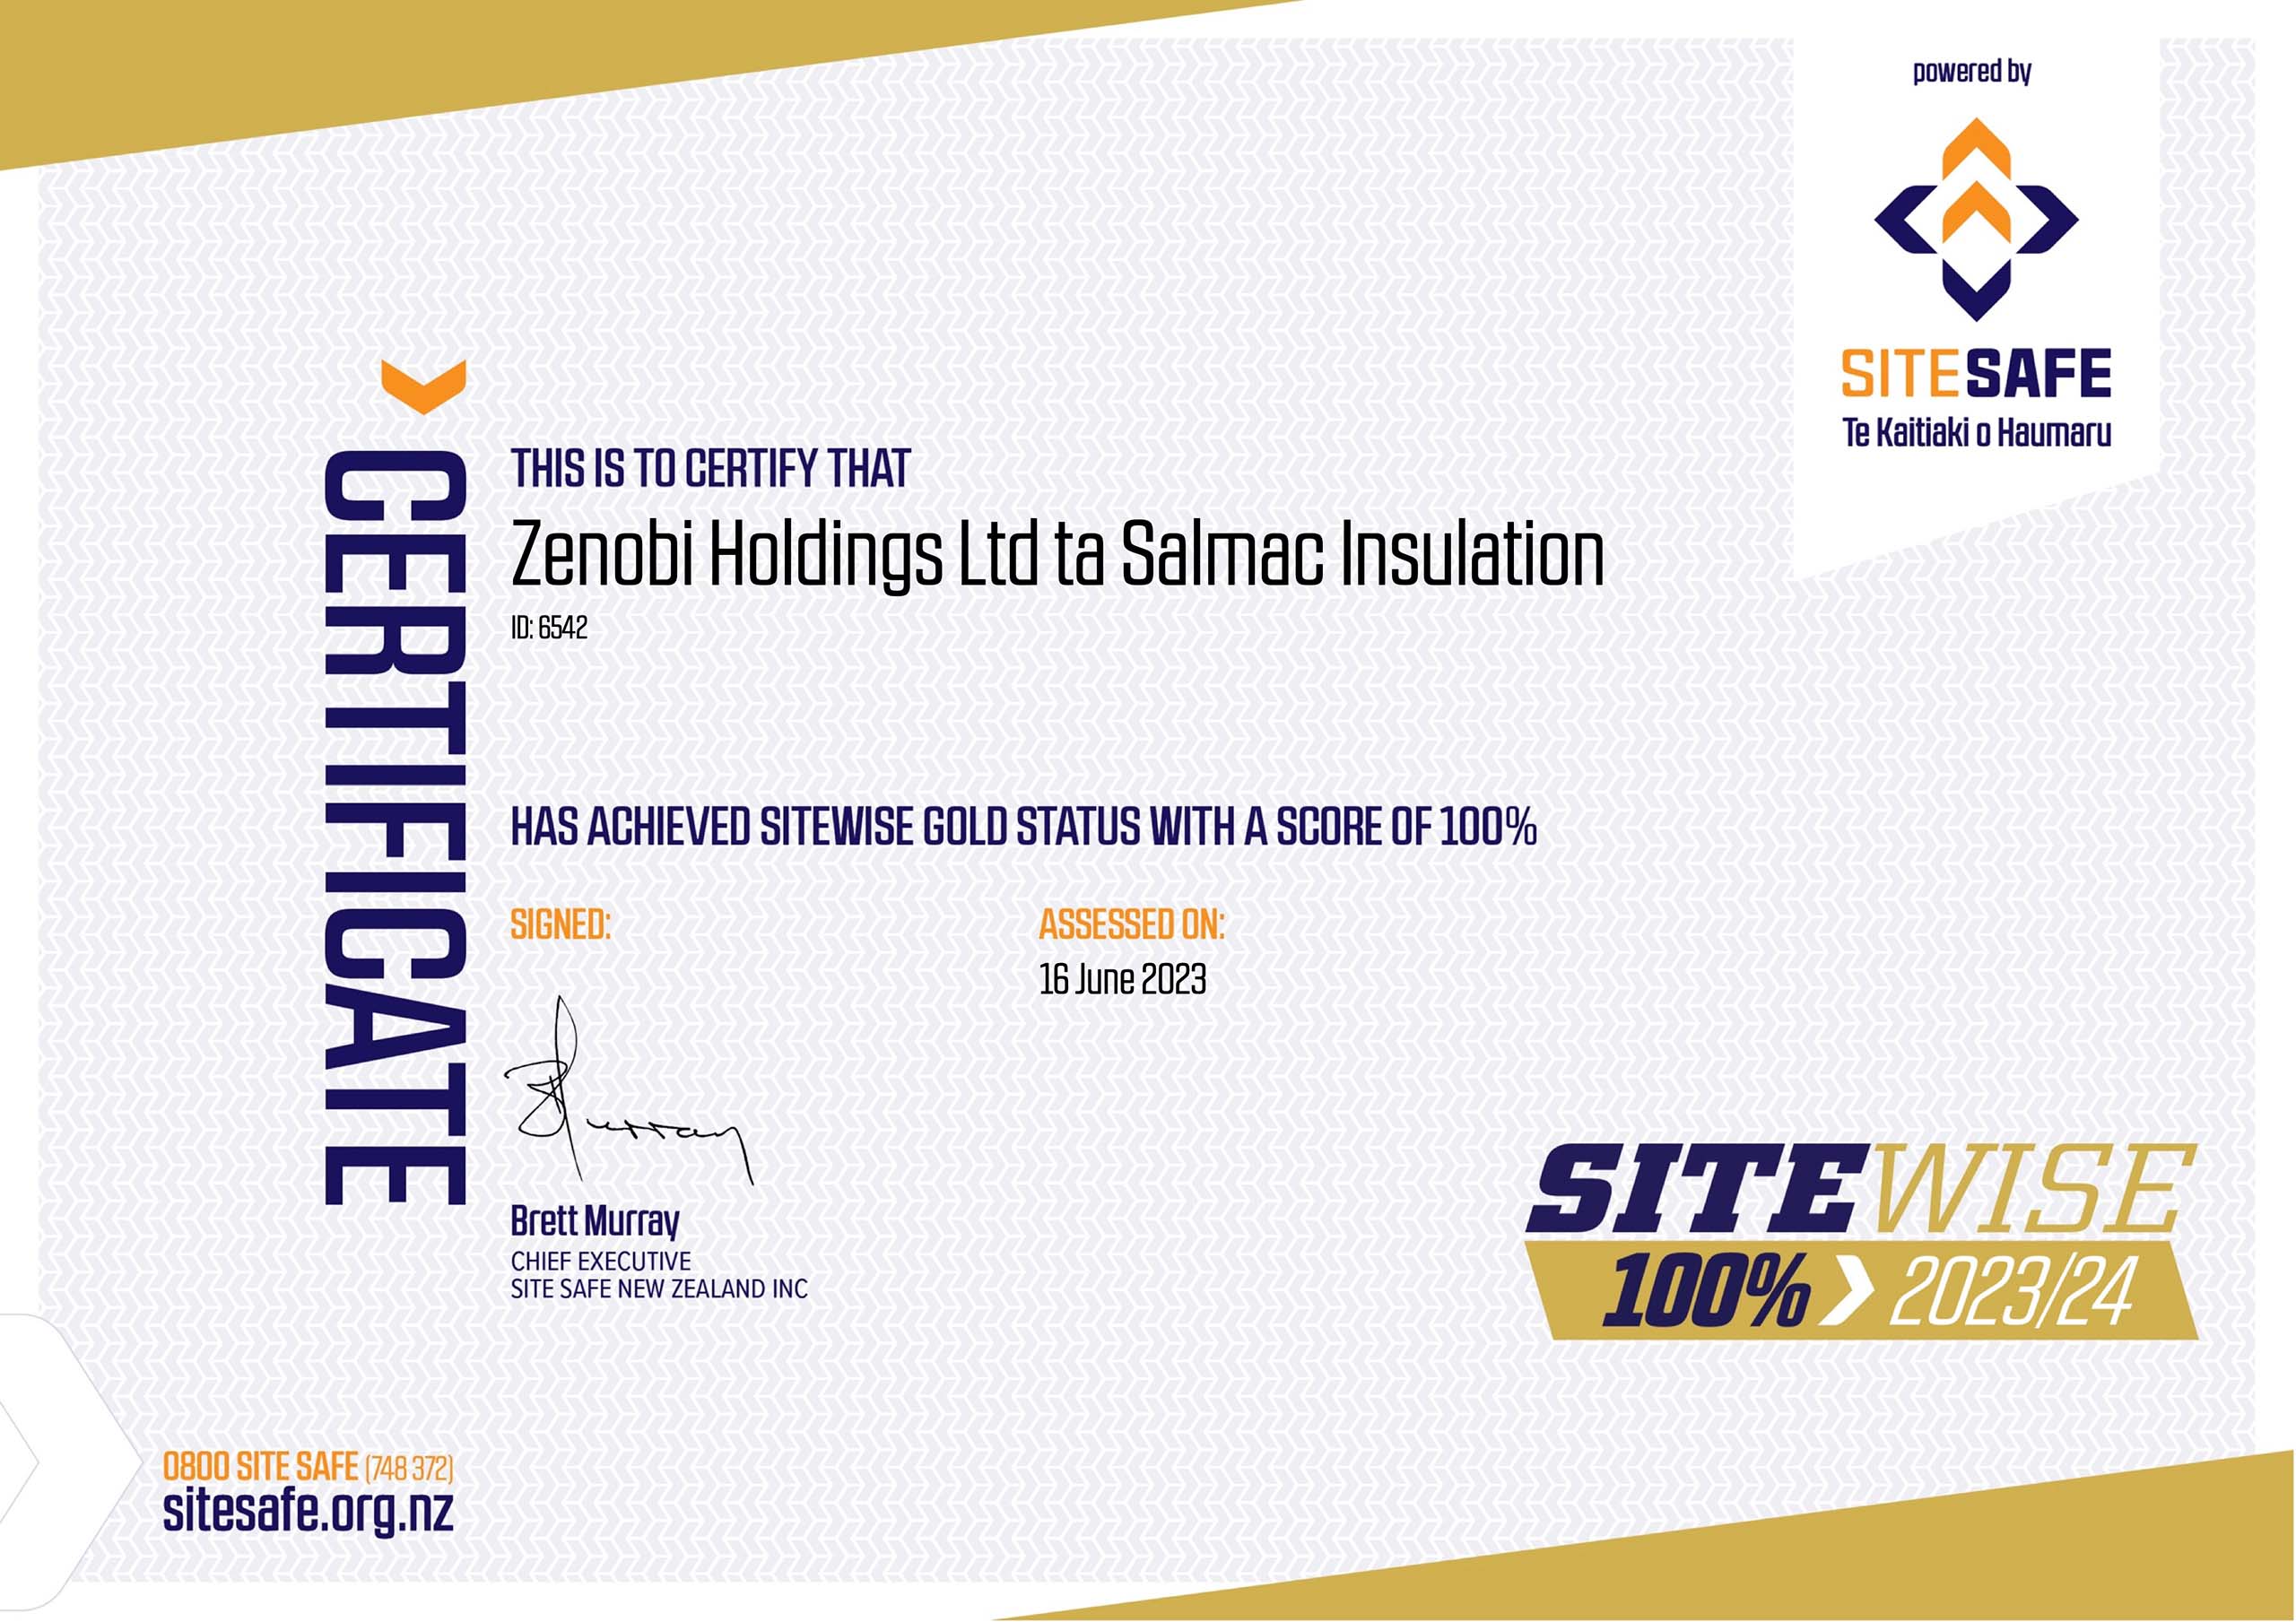 SiteWise 100% Certificate for Salmac Dunedin